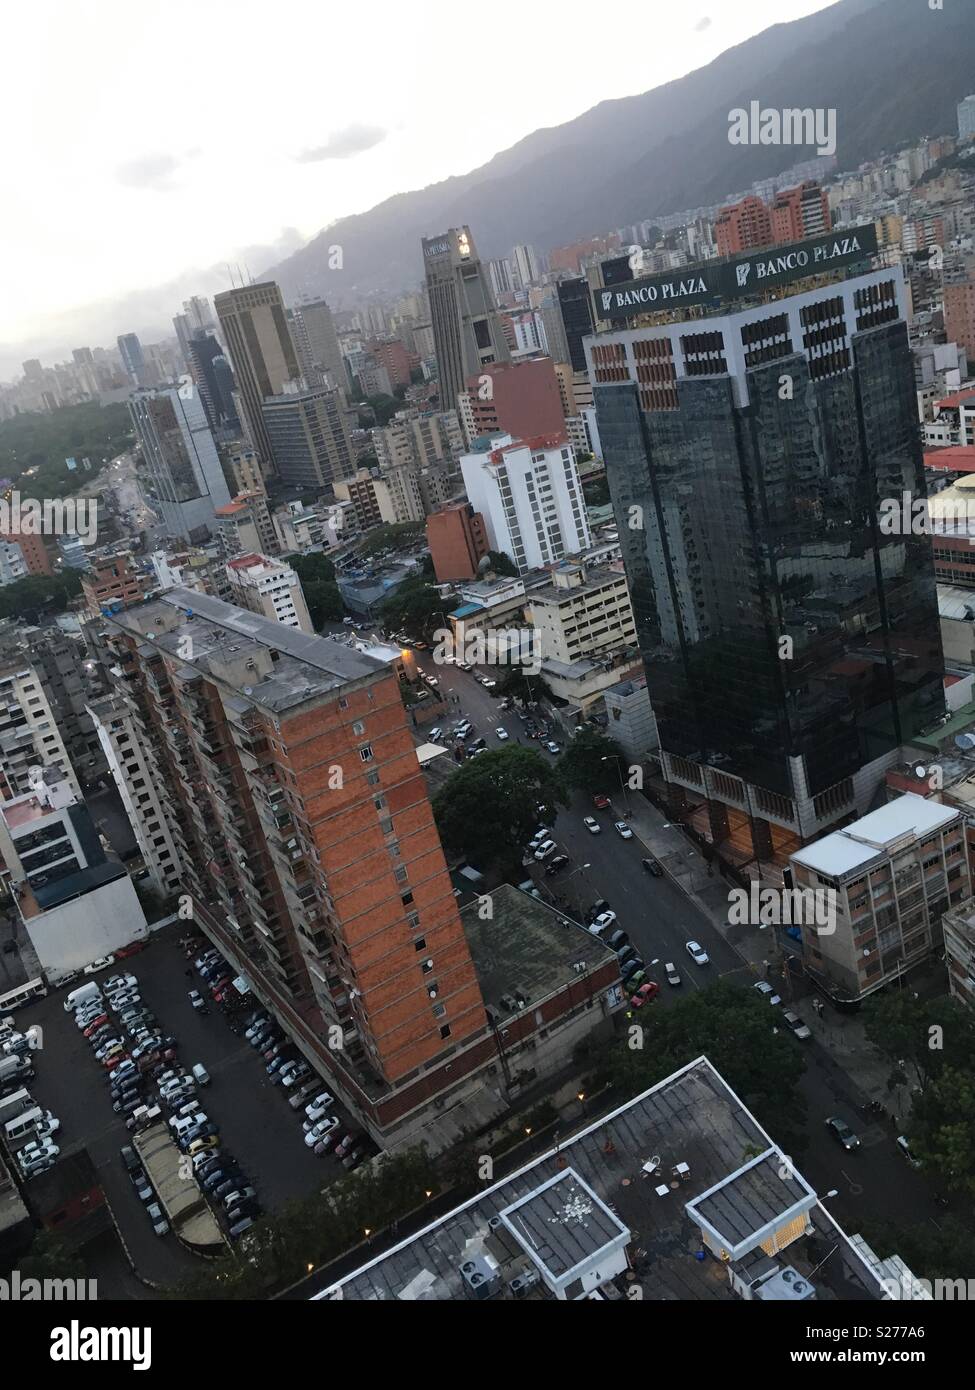 La Sabana Grande Area in Caracas. Il banco Plaza Tower. Vicente Quintero Foto Stock